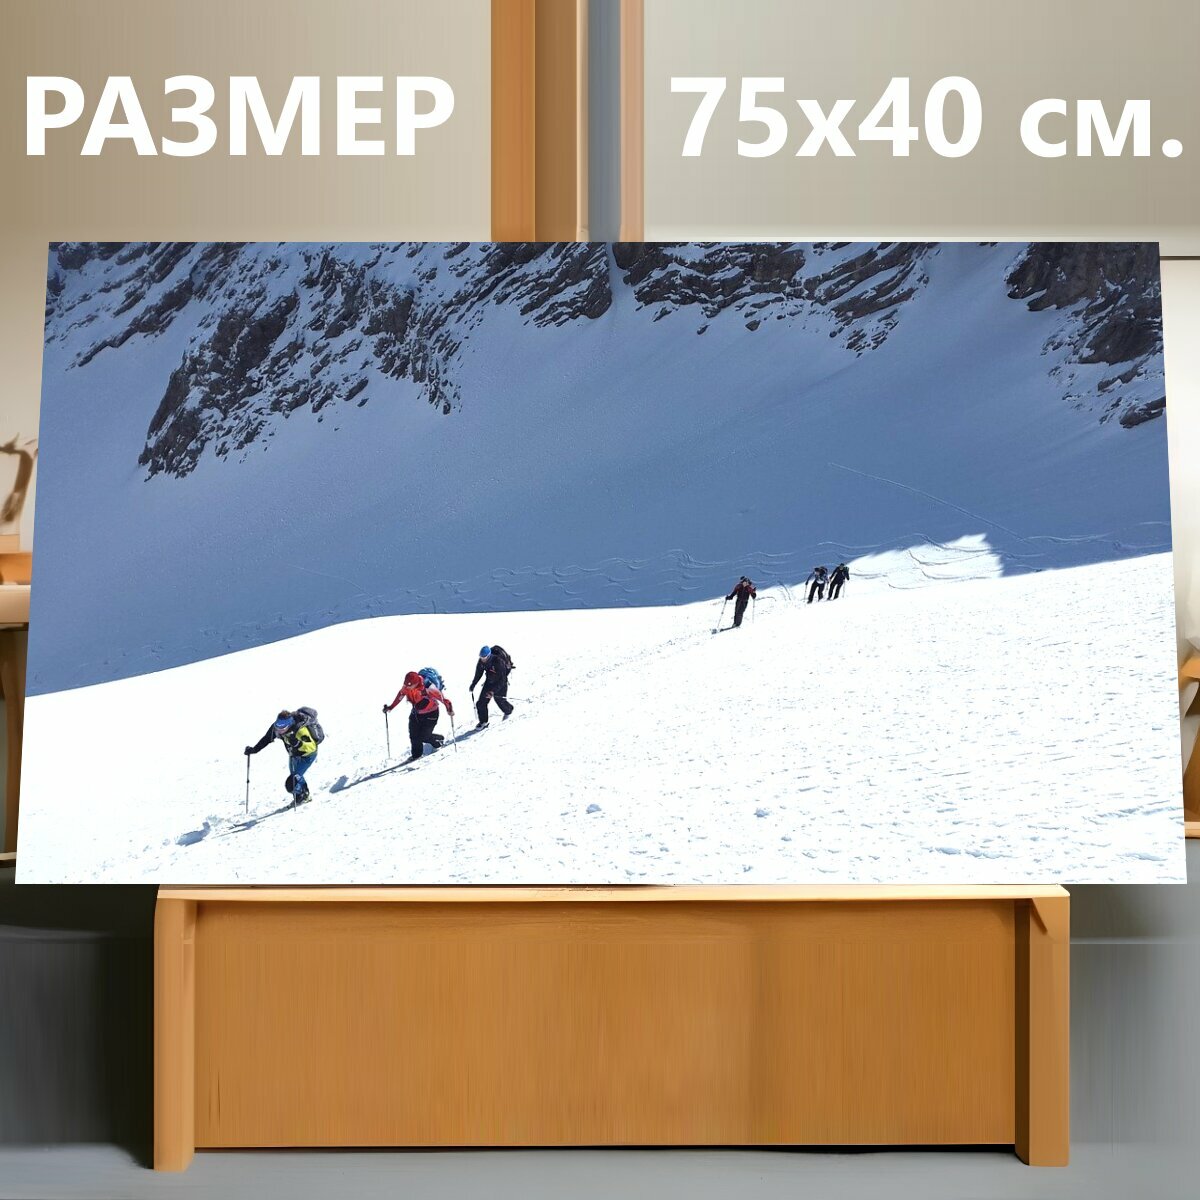 Картина на холсте "Лыжный альпинизм, бэккантри лыжно, зимние виды спорта" на подрамнике 75х40 см. для интерьера